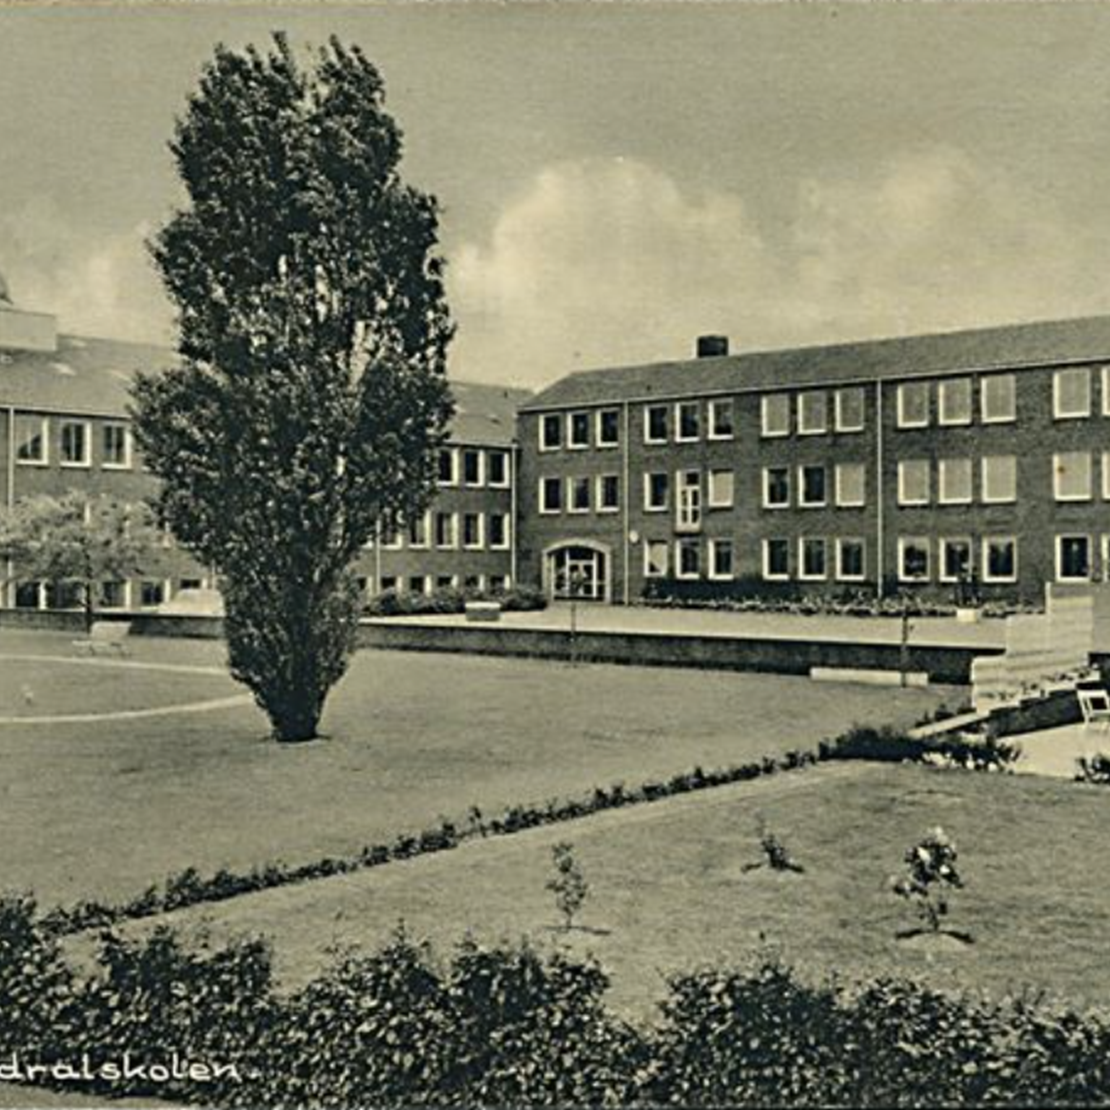 Skolens bygning fra for lang tid siden